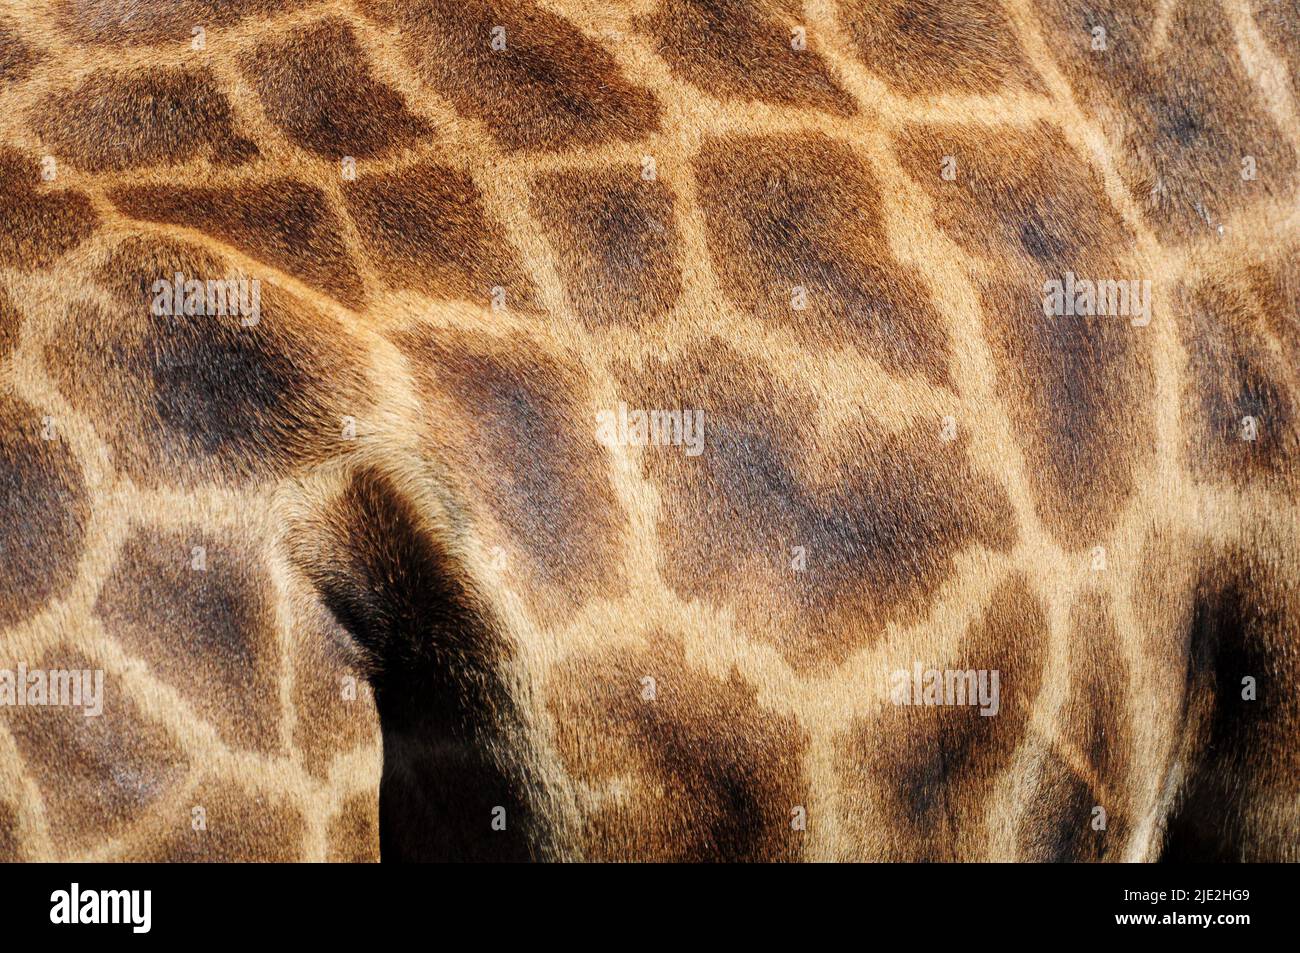 texture made of Giraffe' skin Stock Photo